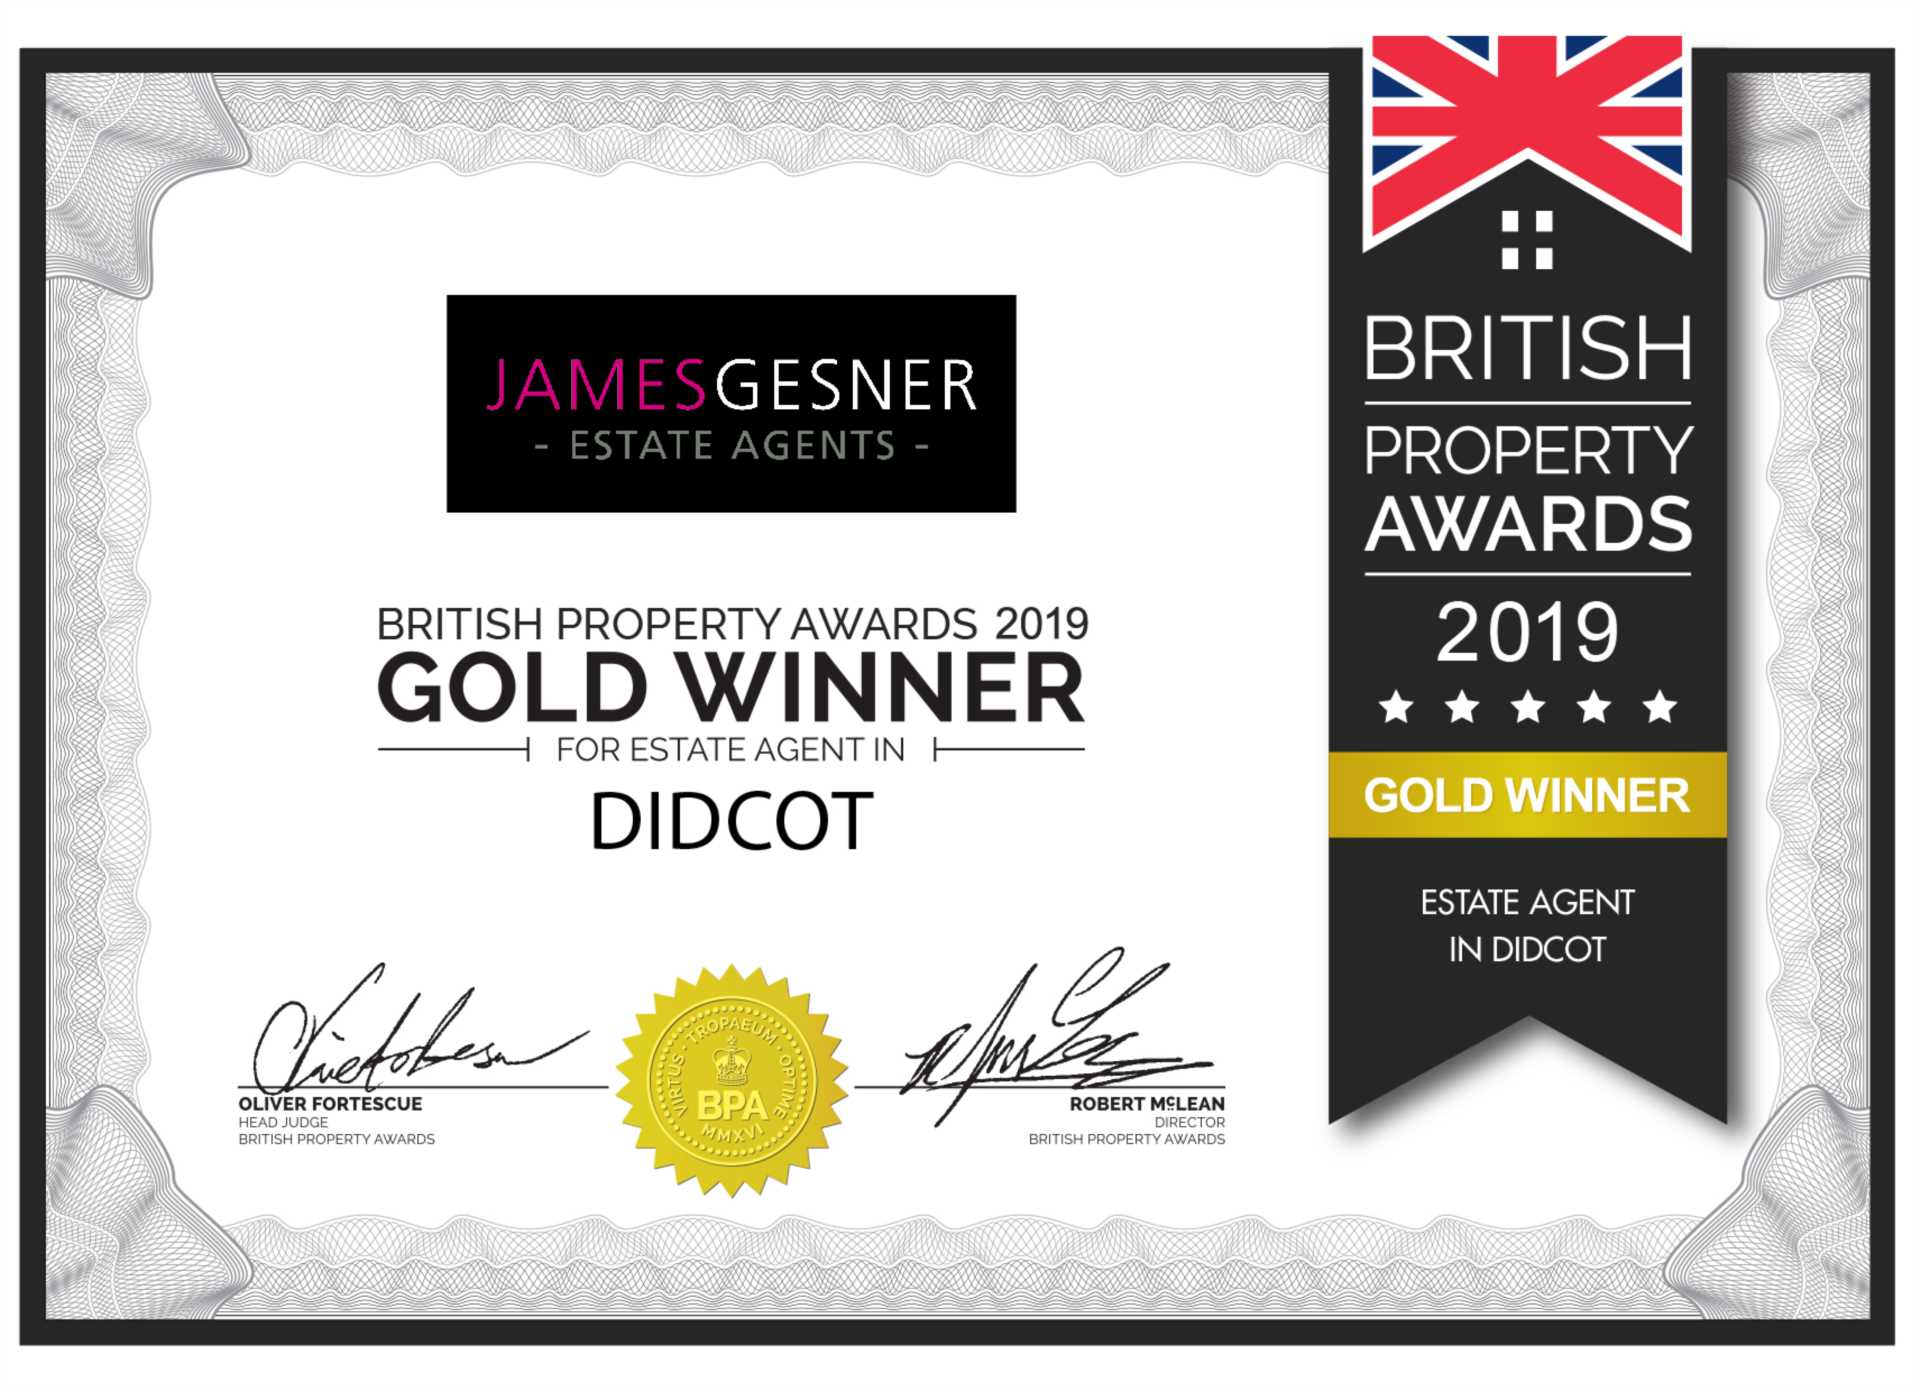 British Property Awards Gold Award Winner Three Years Running!